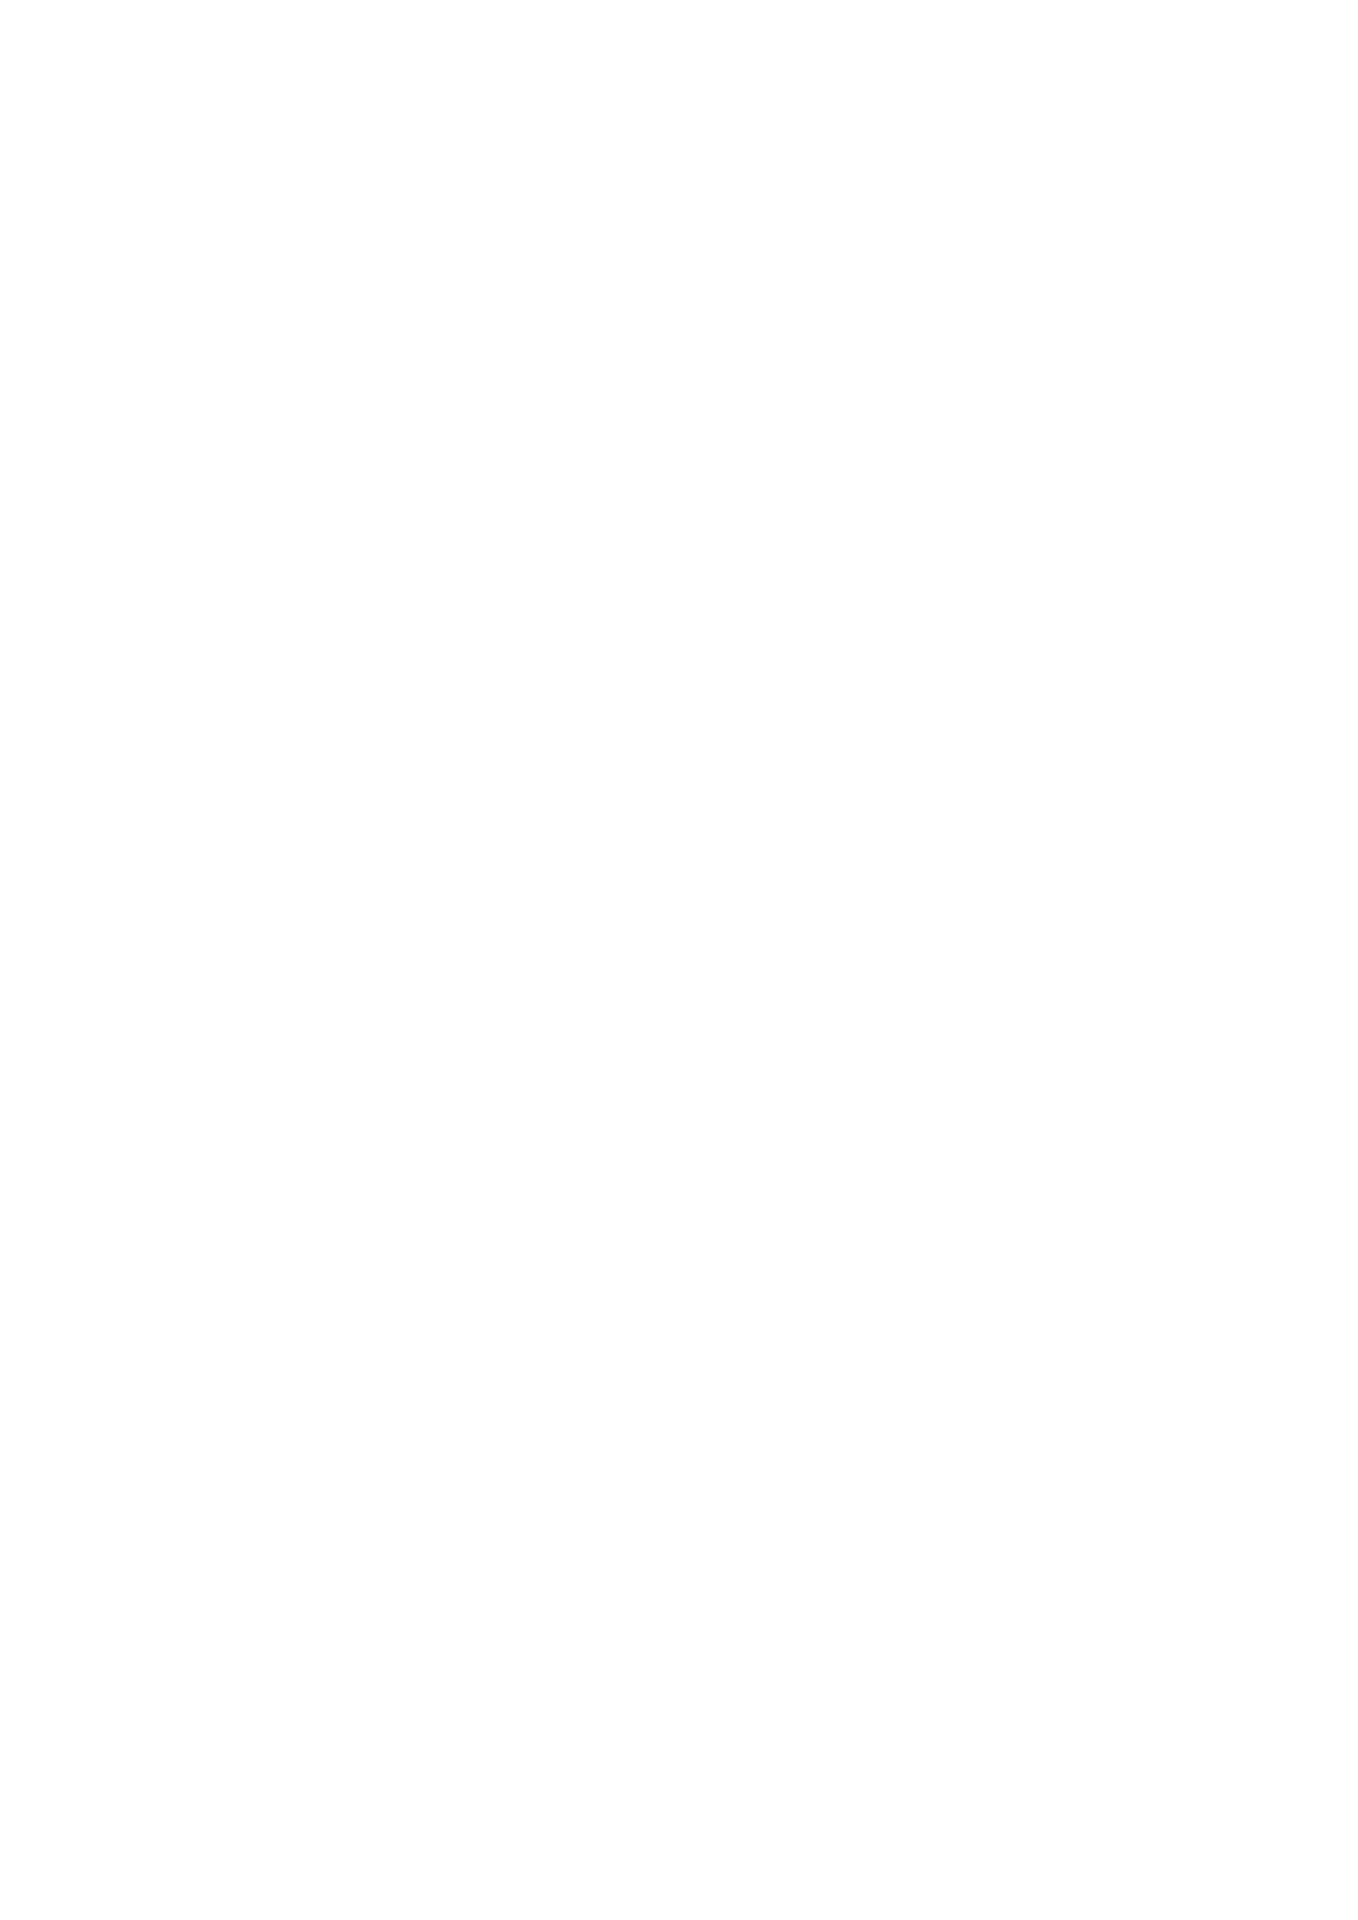 Capa da Fumdhamentos XVIII - N2